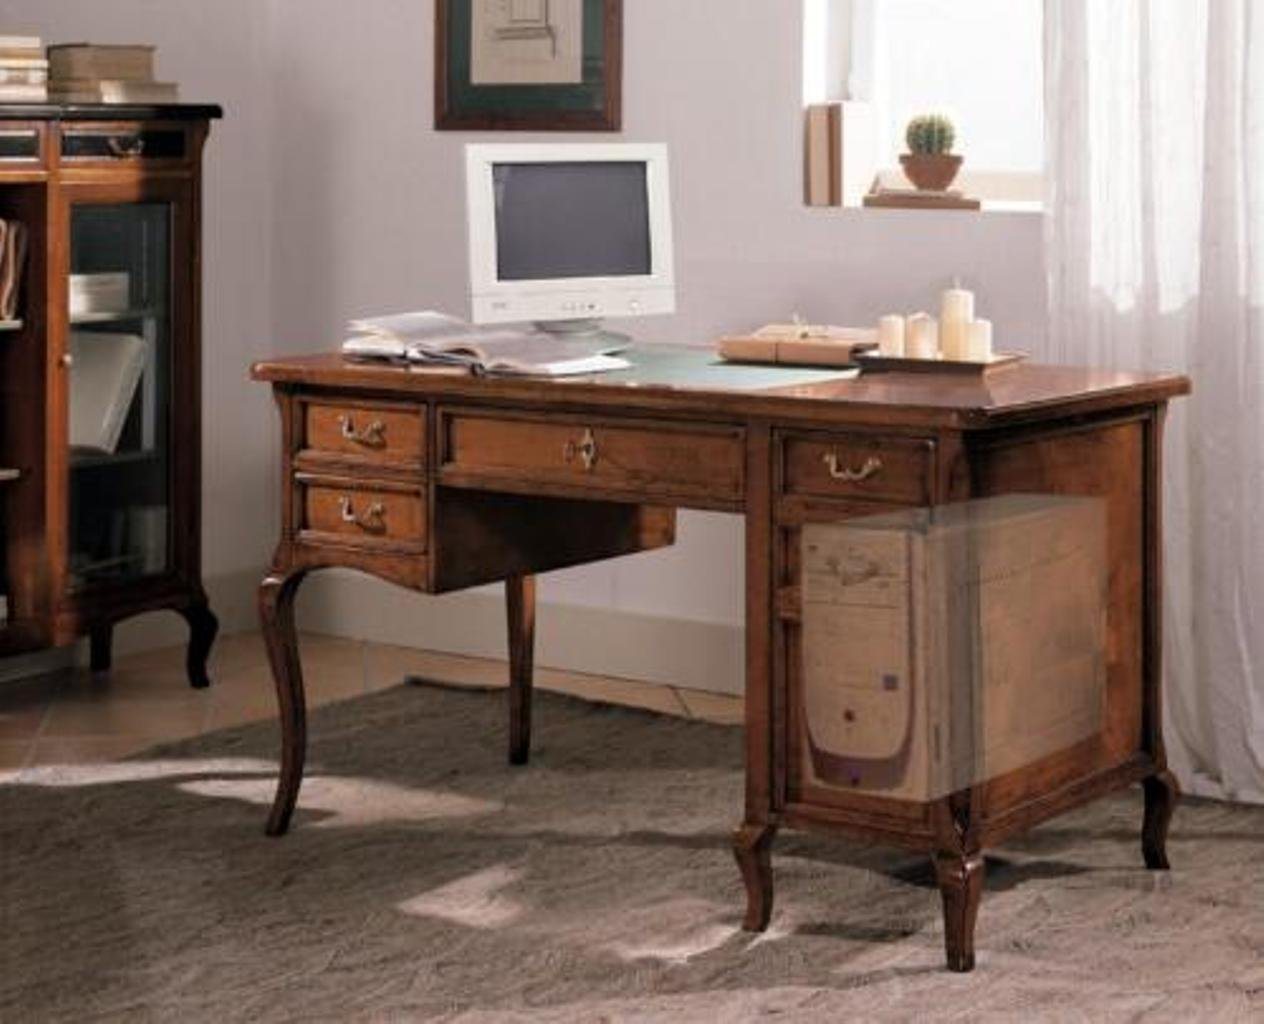 JVmoebel Schreibtisch, Büro Möbel Design Einrichtung Antik Holz Tisch Sekretär von JVmoebel